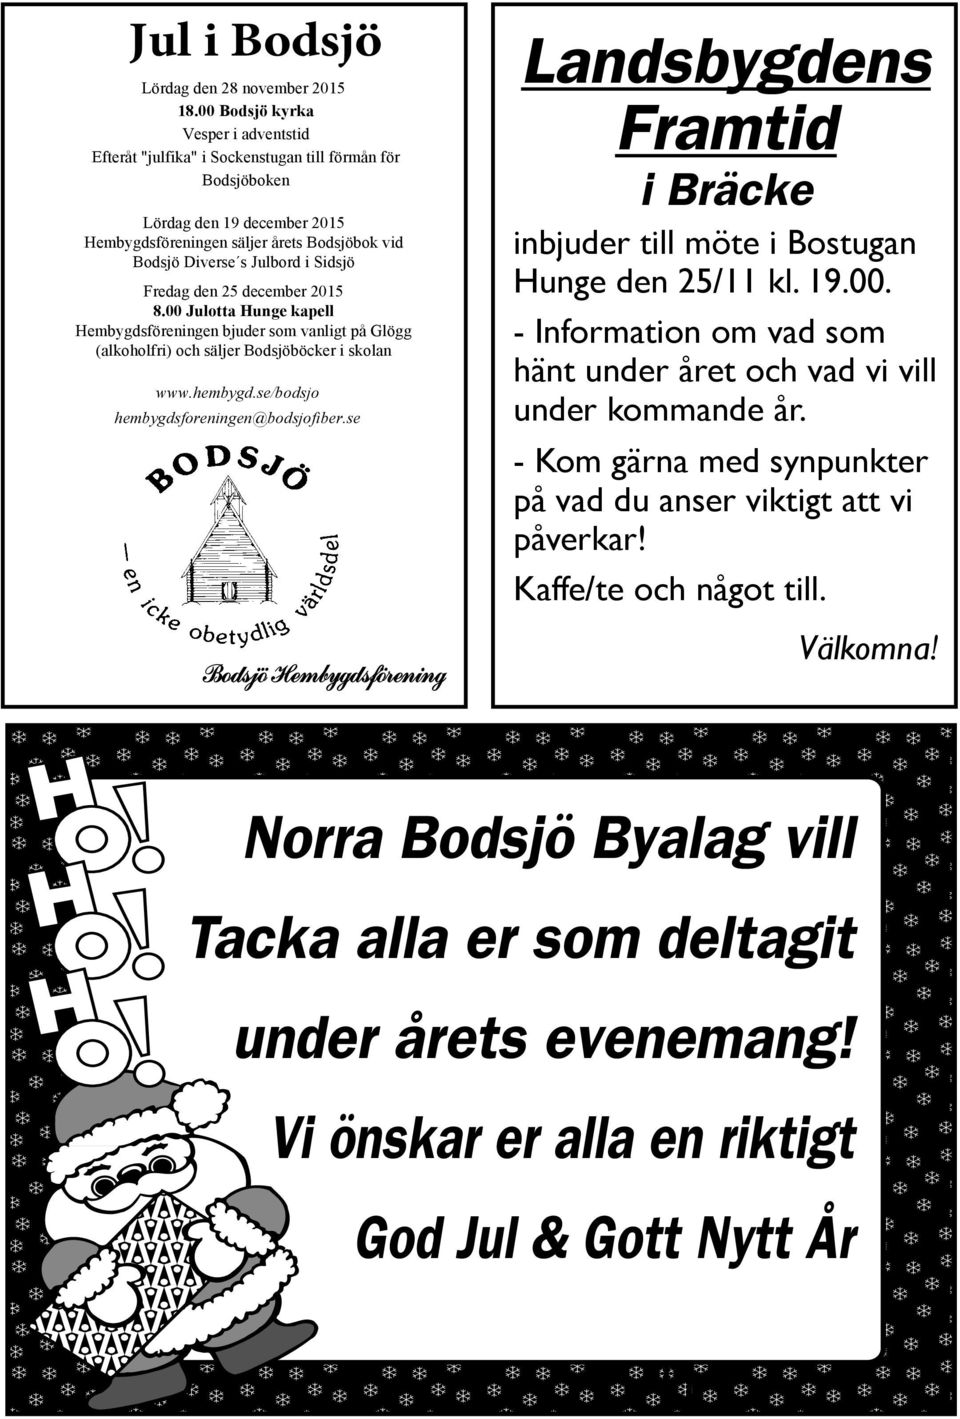 Sidsjö Fredag den 25 december 2015 8.00 Julotta Hunge kapell Hembygdsföreningen bjuder som vanligt på Glögg (alkoholfri) och säljer Bodsjöböcker i skolan www.hembygd.